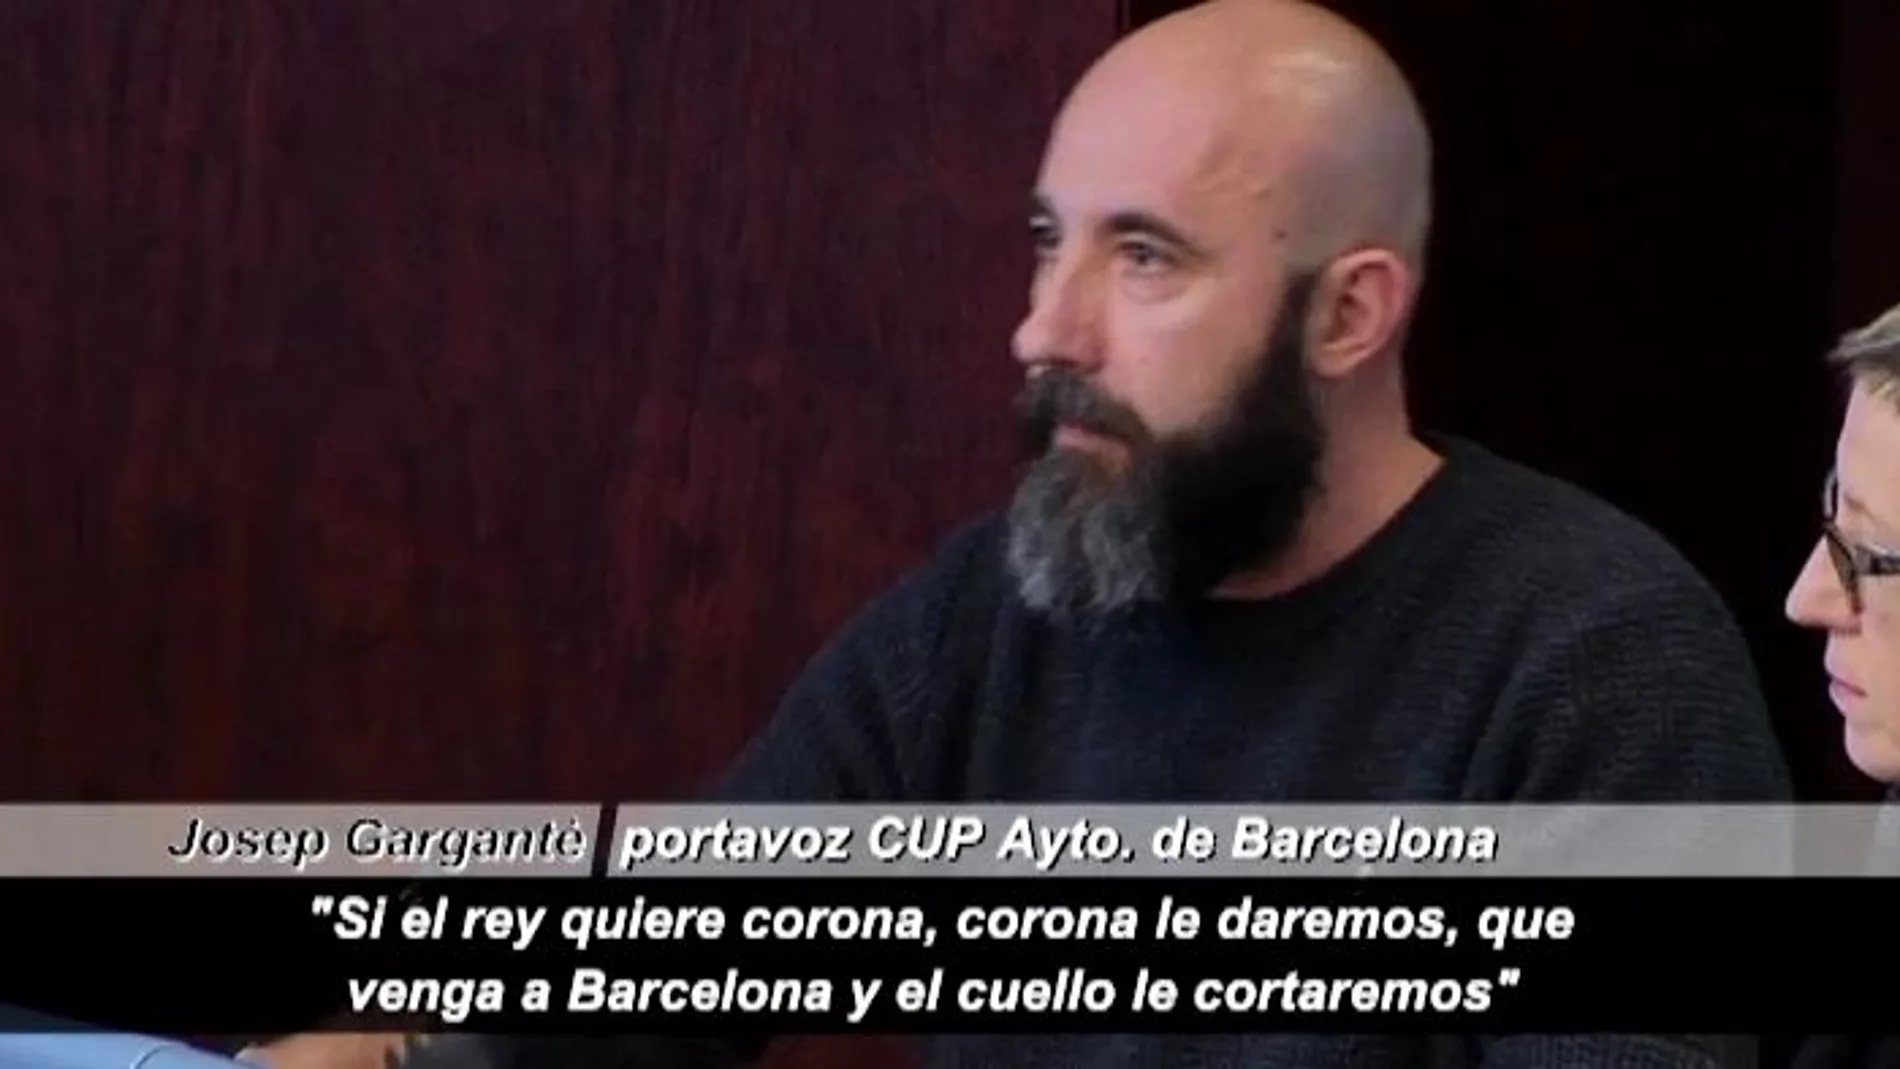 Imagen del portavoz de la CUP en el Ayuntamiento de Barcelona, Josep Garganté